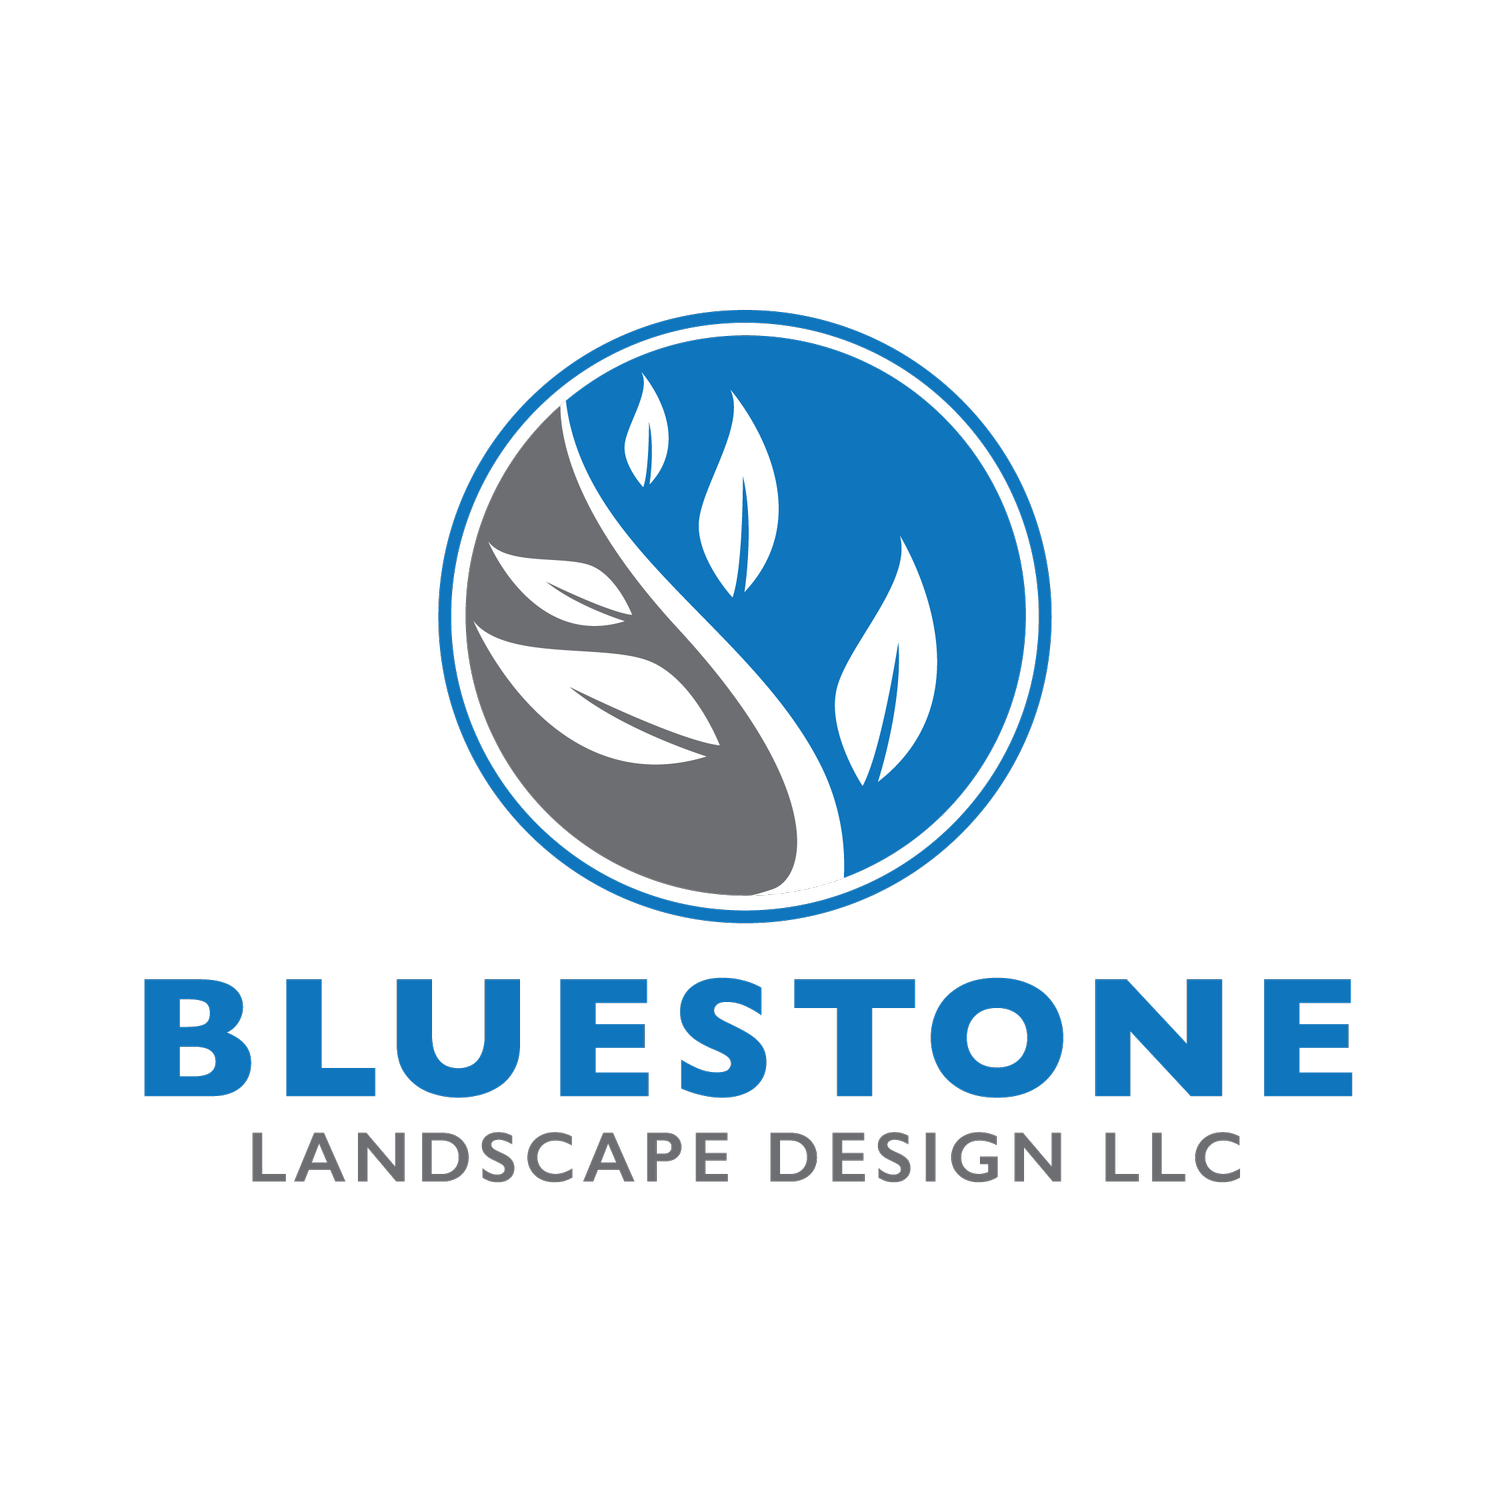 Bluestone Landscape Design